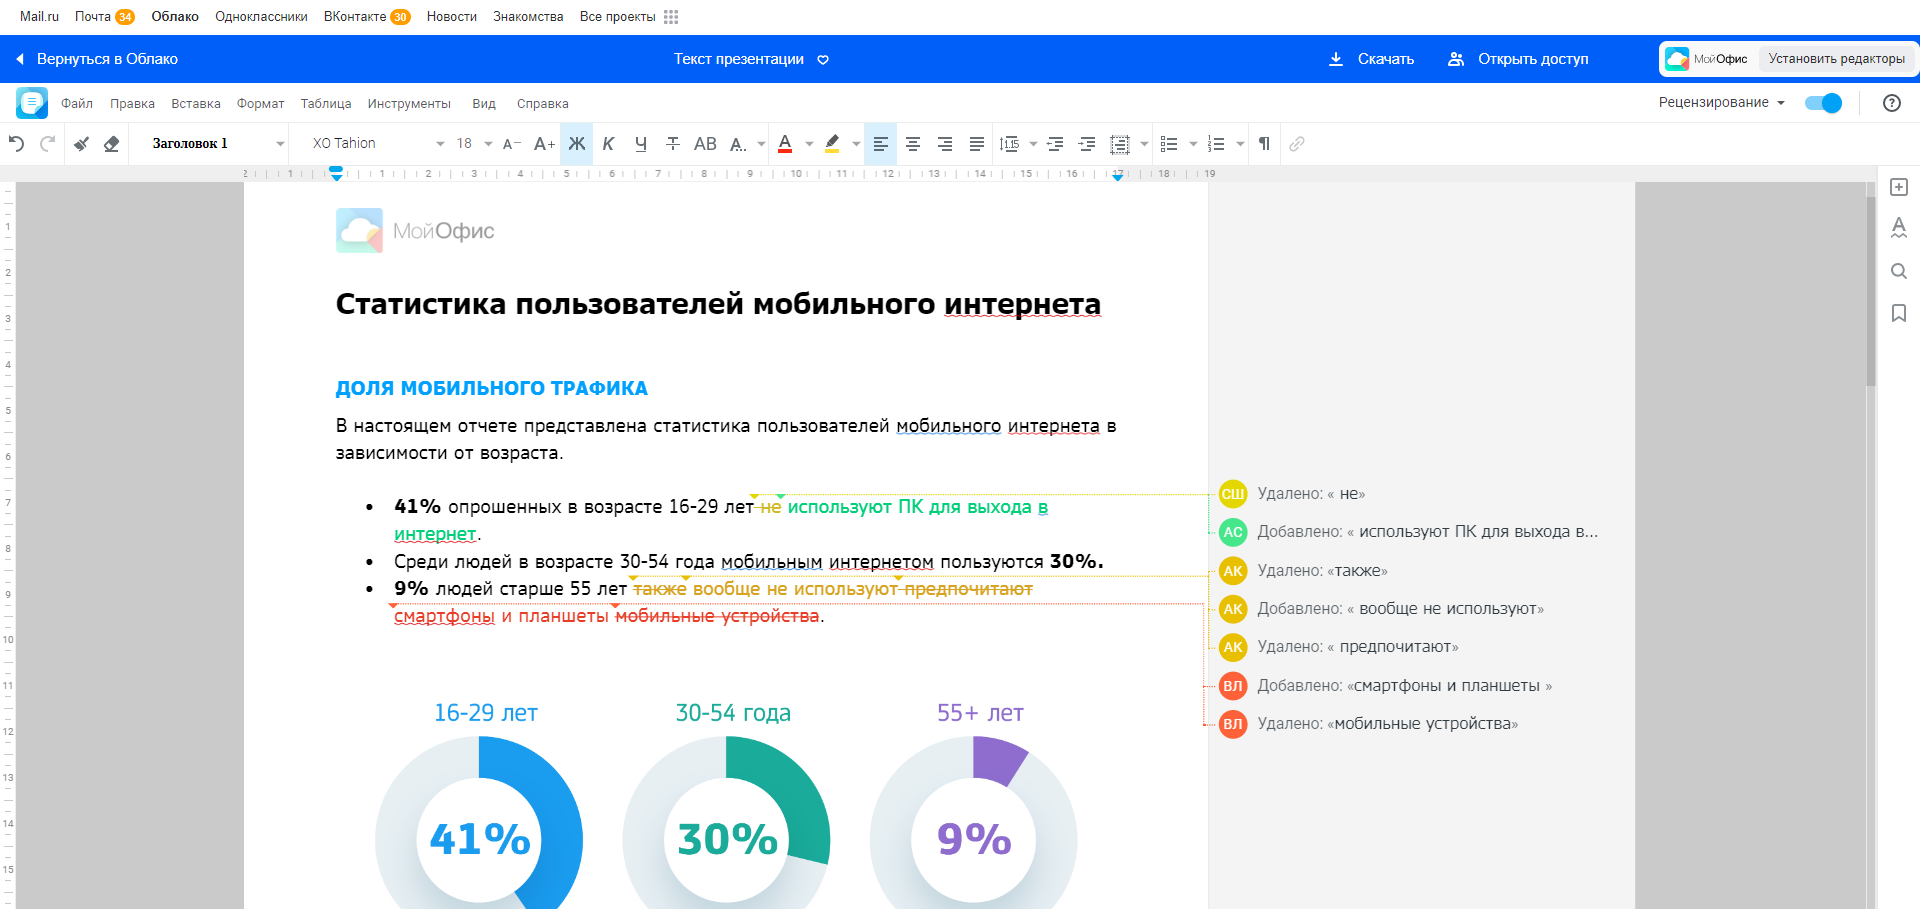 Пользователи Почты и «Облака Mail.ru» могут редактировать документы в приложениях МойОфис прямо из браузера